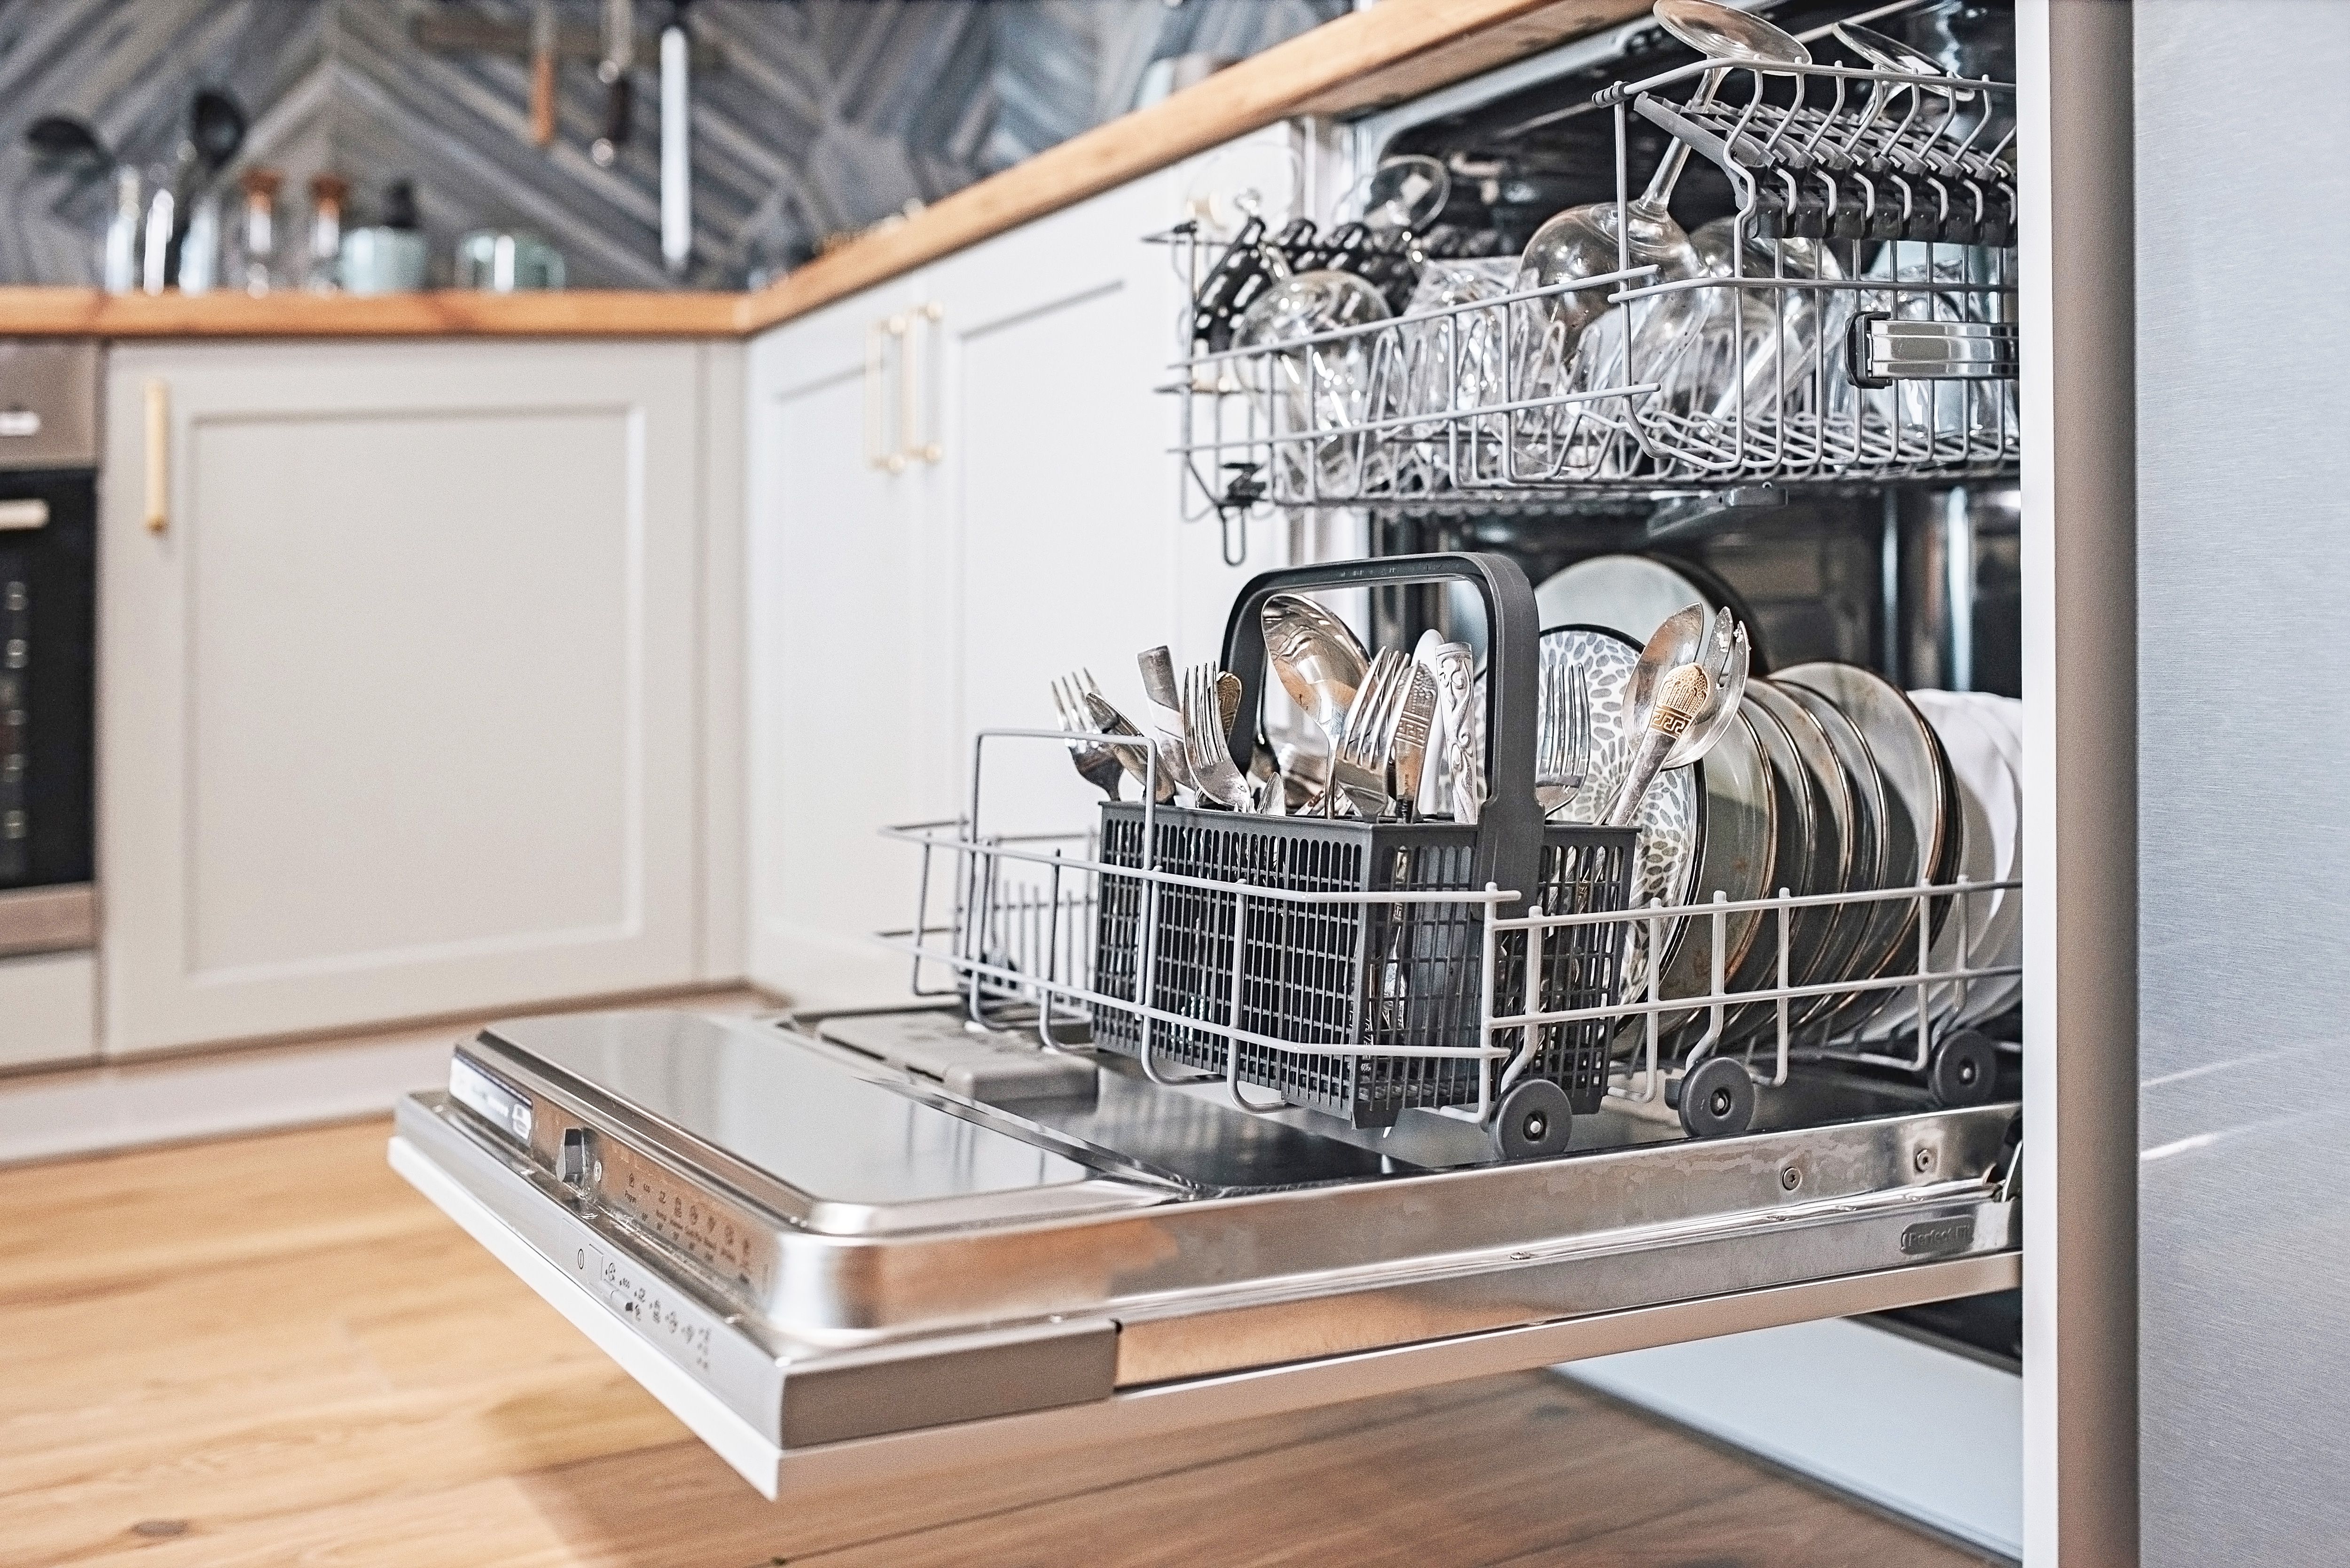 The Dishwasher Mistakes We Wish We Knew Sooner